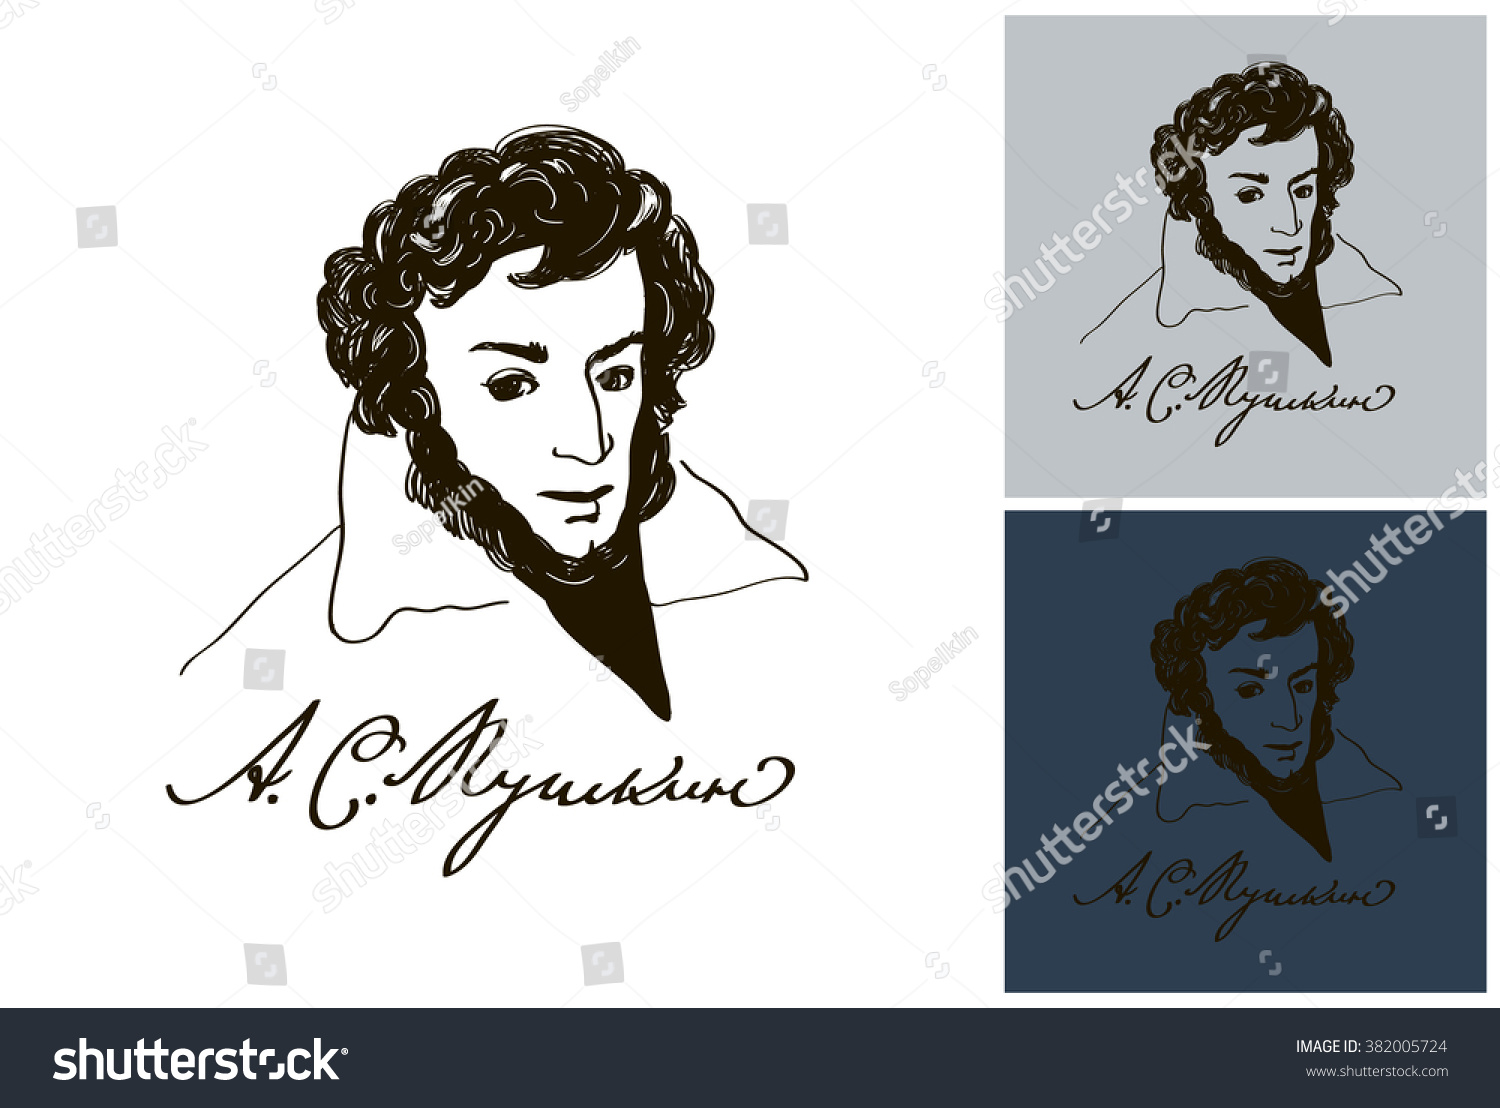 Пушкин профиль на прозрачном фоне